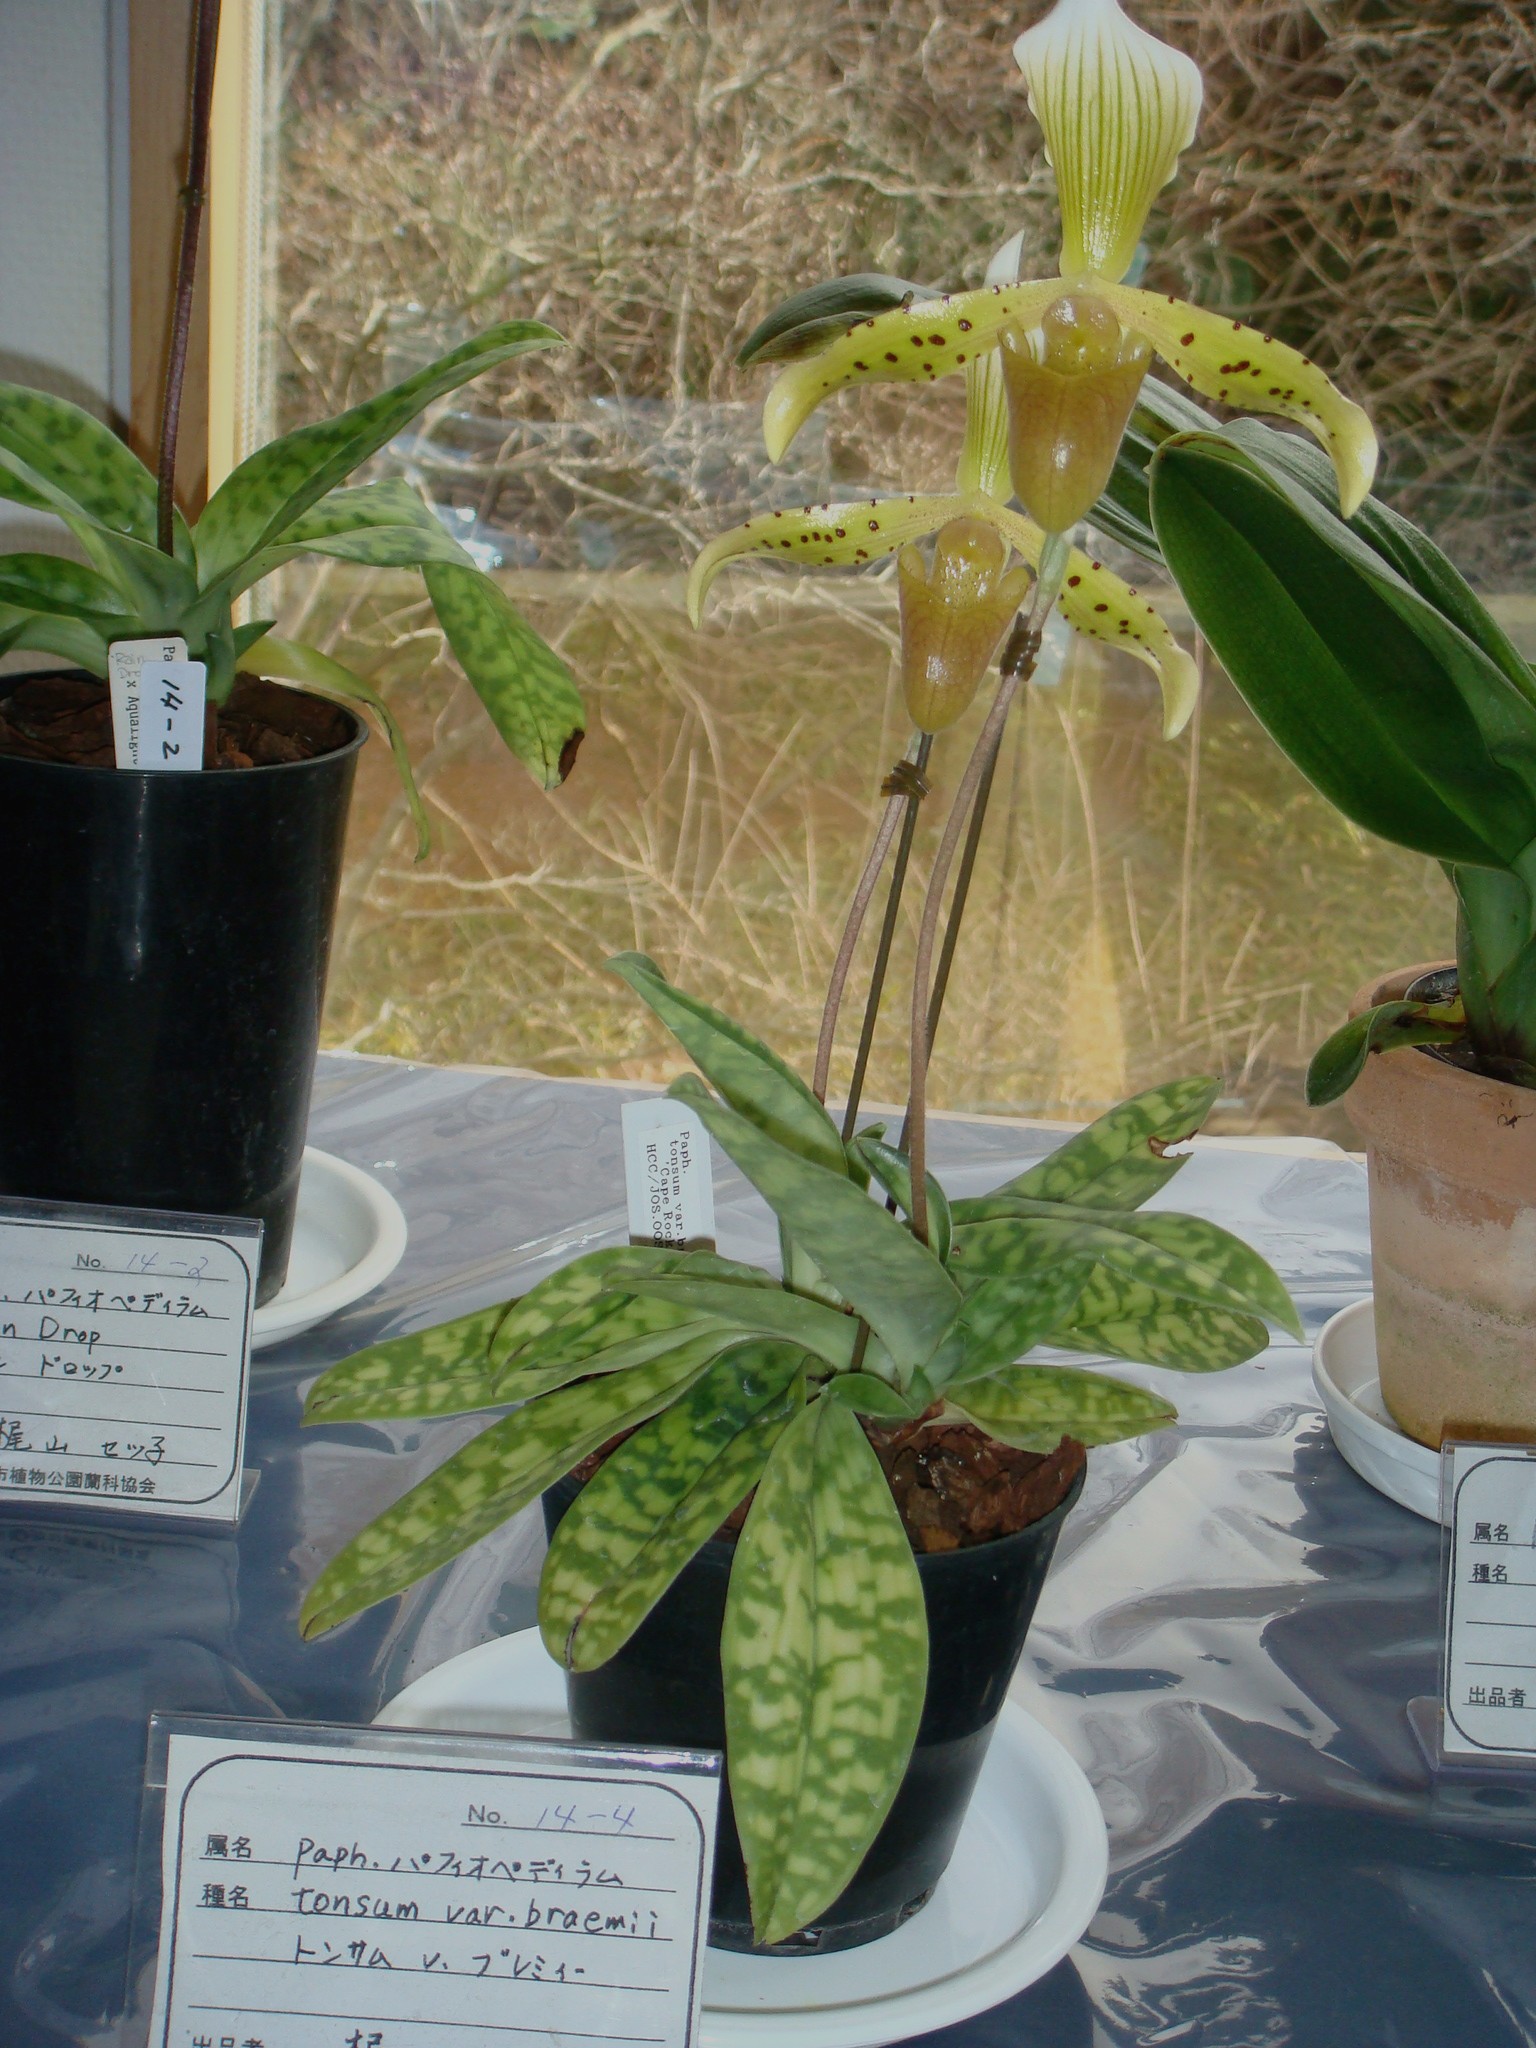 http://orchids.la.coocan.jp/Paphiopedilum/Paphiopedilum%20braemii/DSC03498.JPG